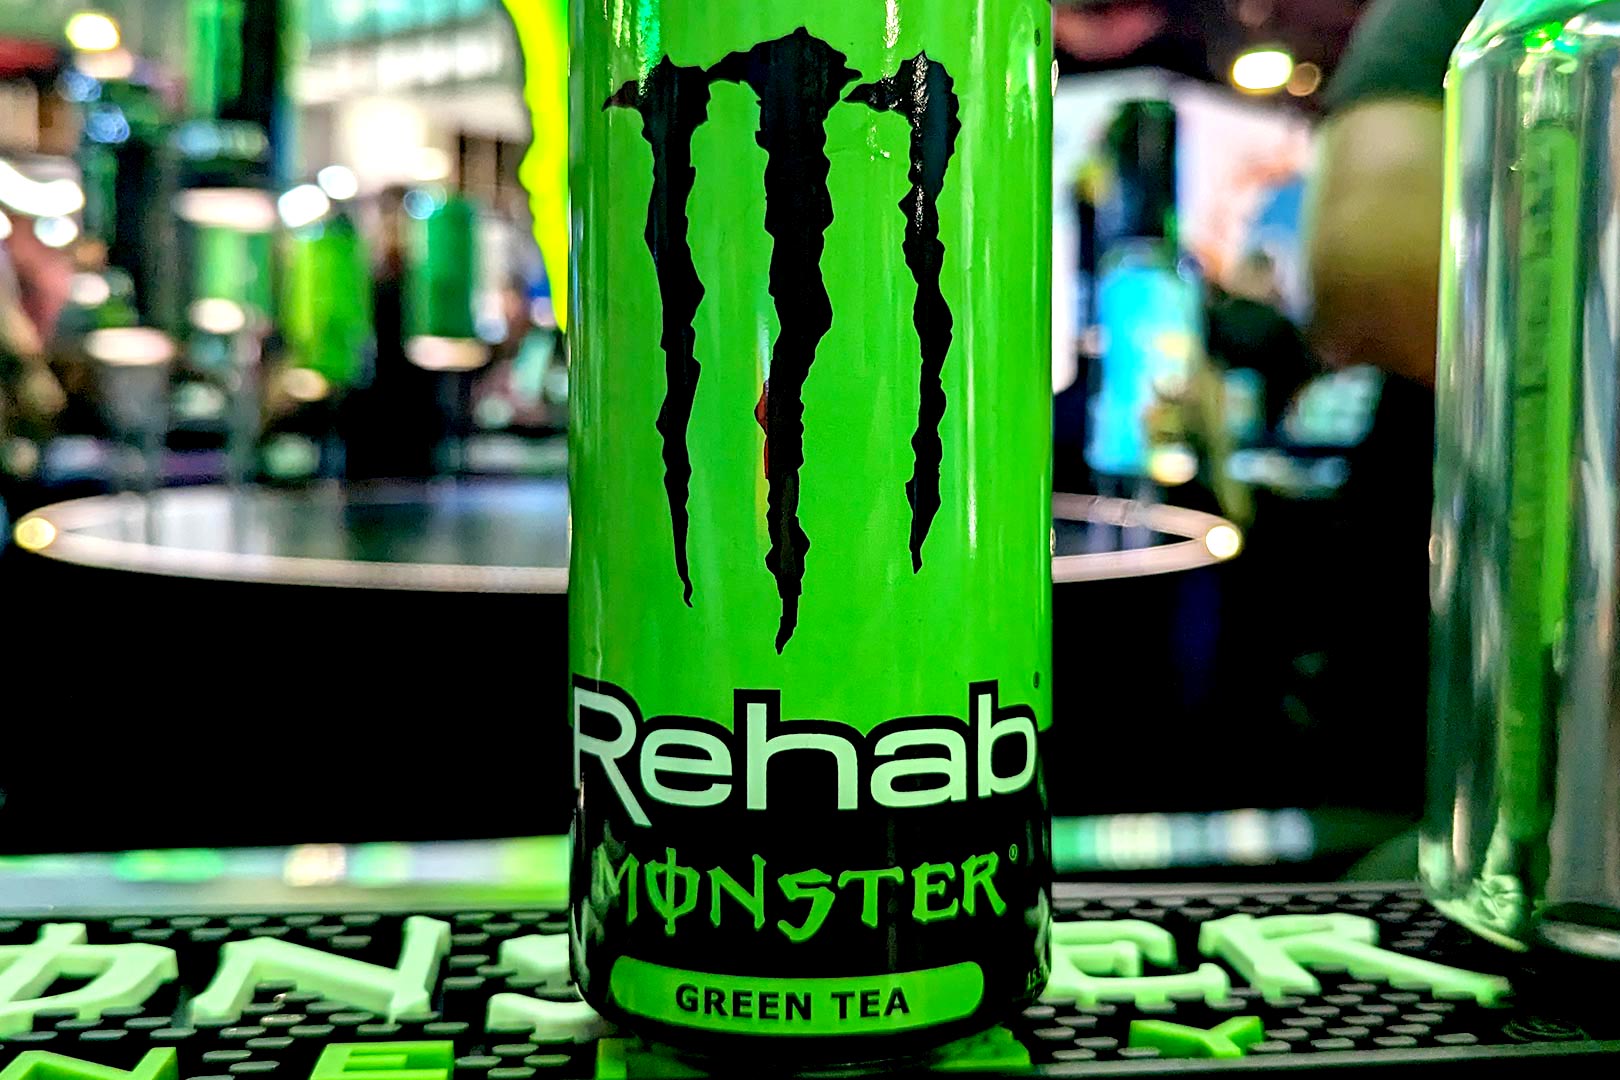 Green Tea Monster Rehab